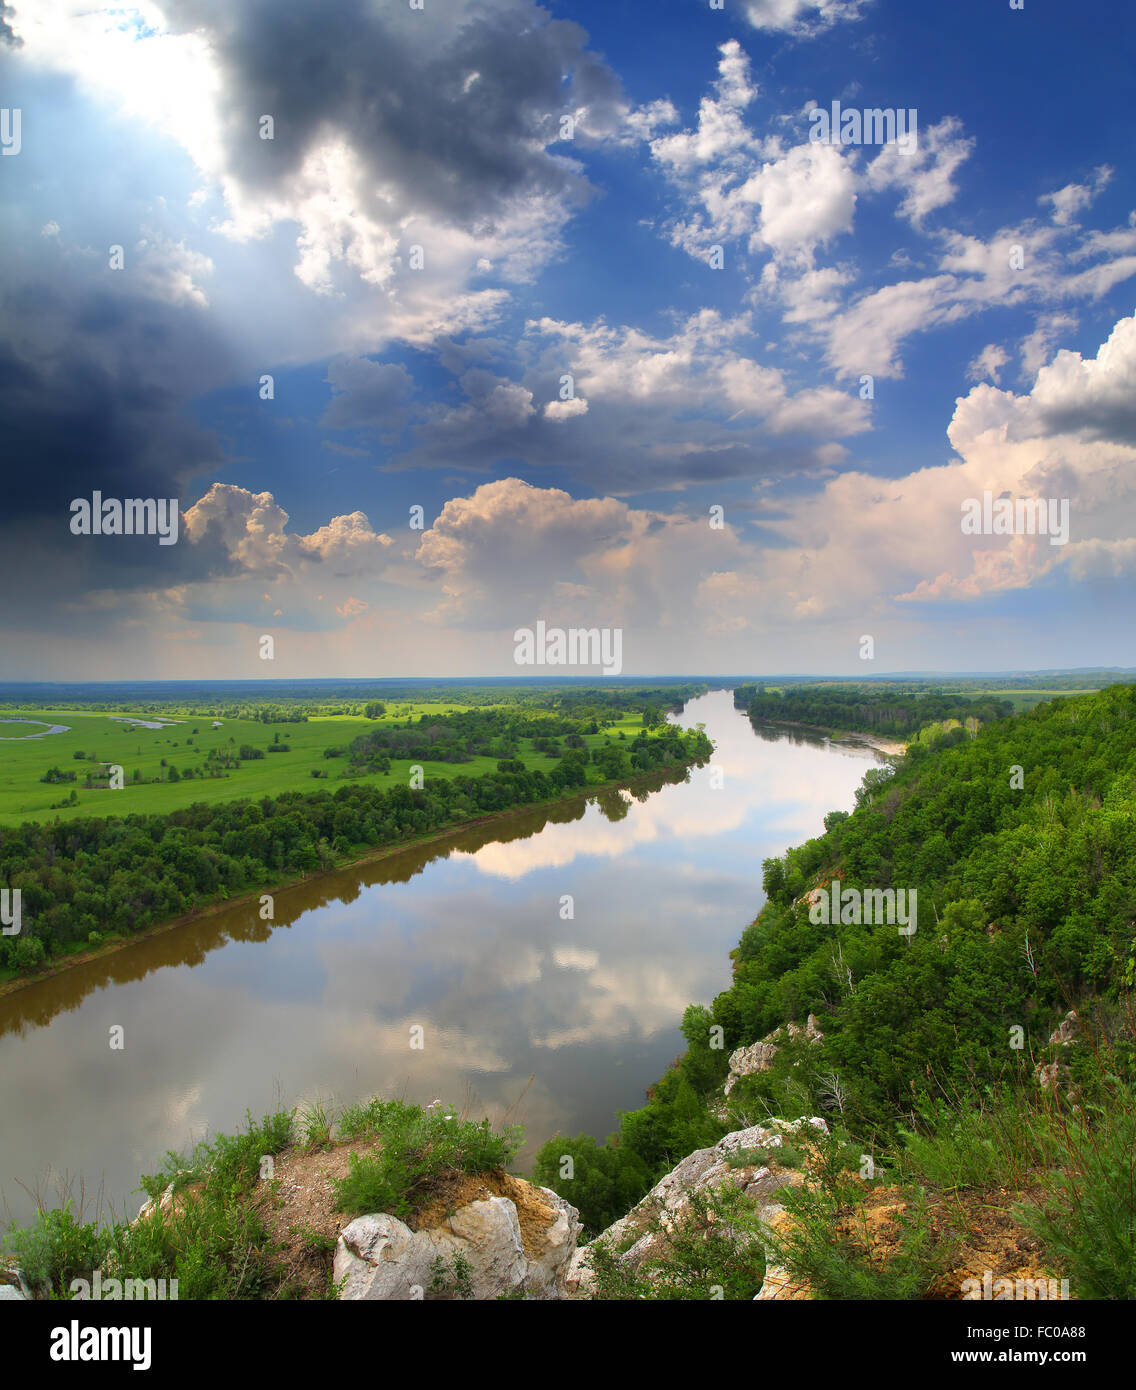 Landschaft mit Fluss und Regen am Horizont Stockfoto